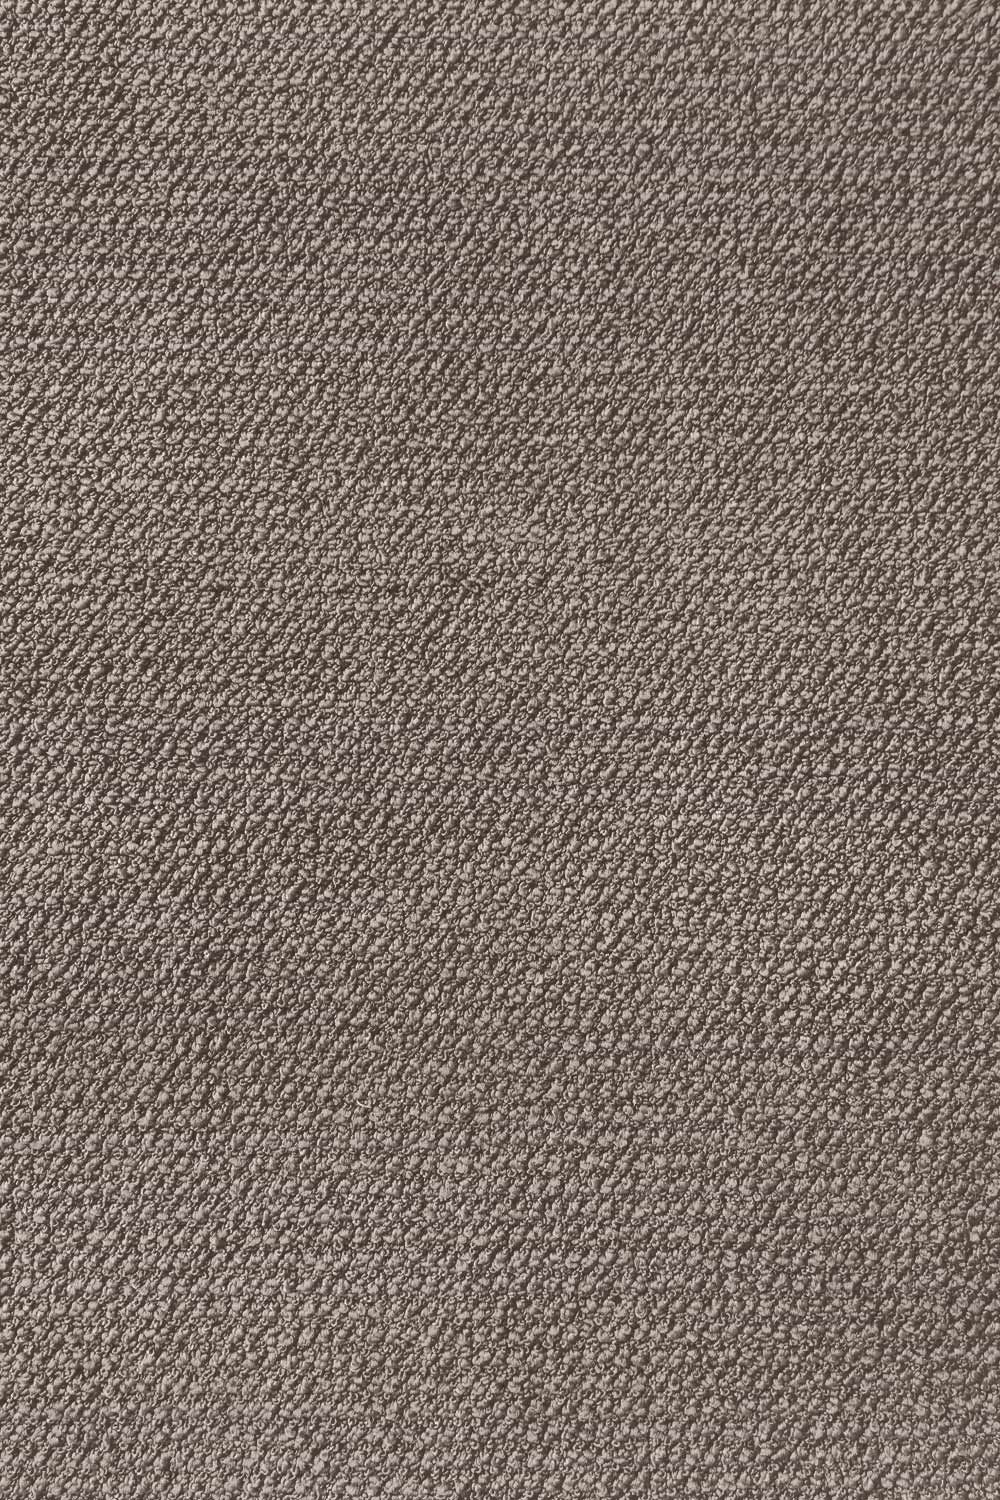 Metrážový koberec Corvino 39 400 cm